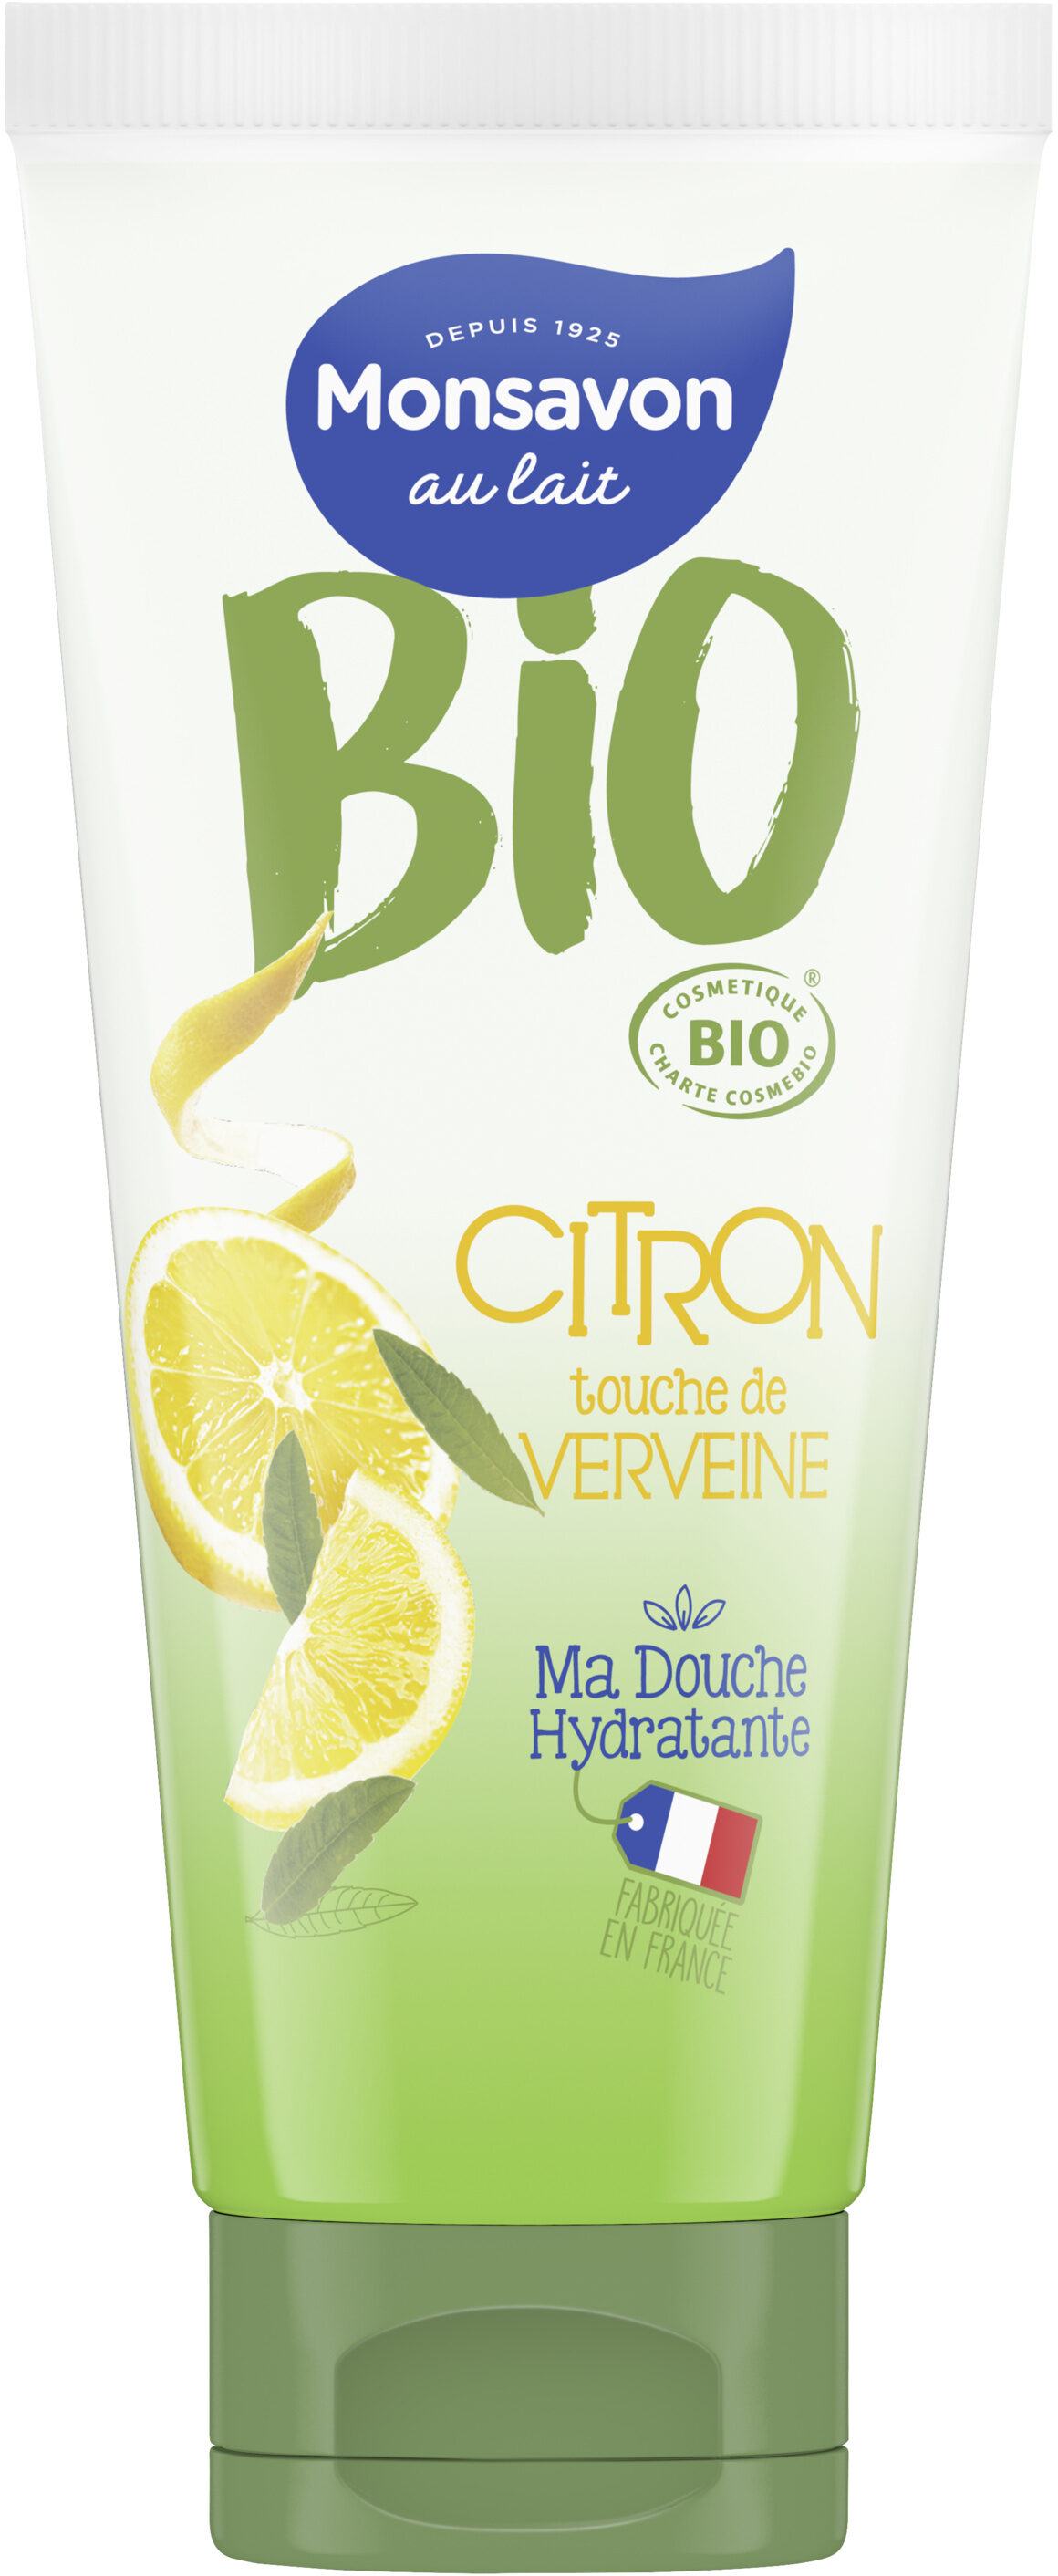 Monsavon Gel Douche Hydratant Certifié Bio Citron Touche de Verveine 200ml - Produto - fr